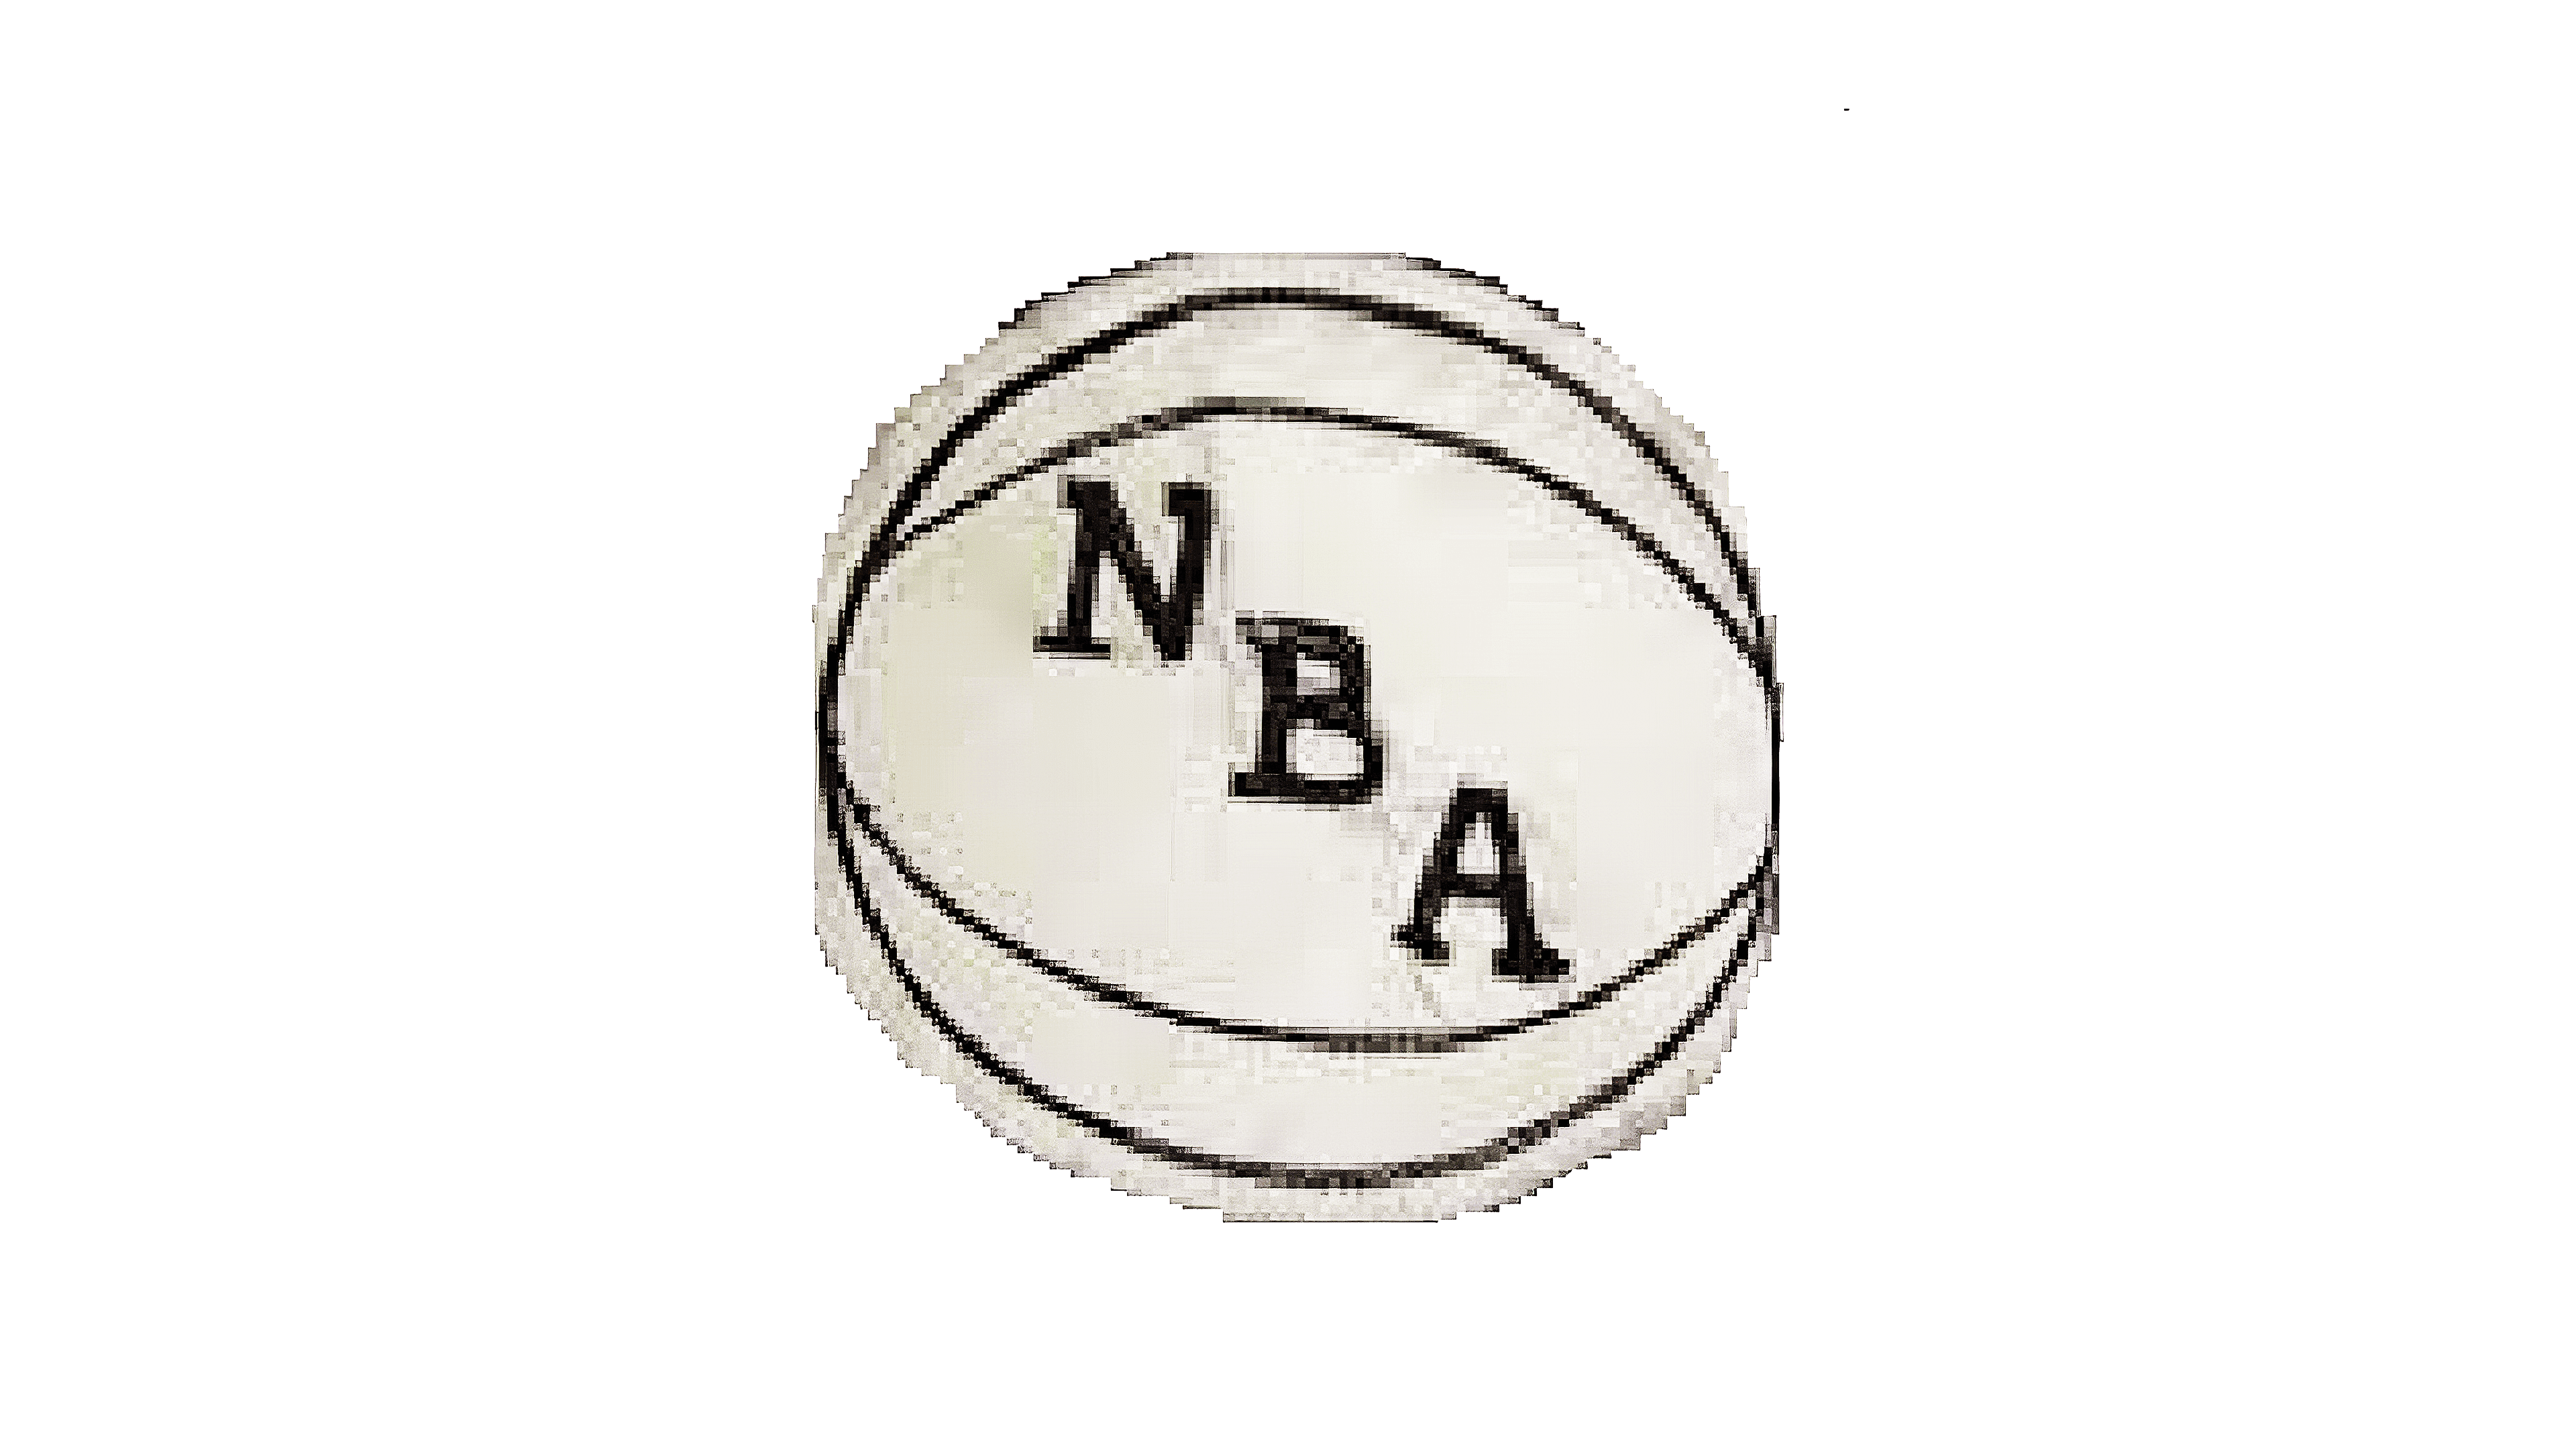 NBA Logo and its History